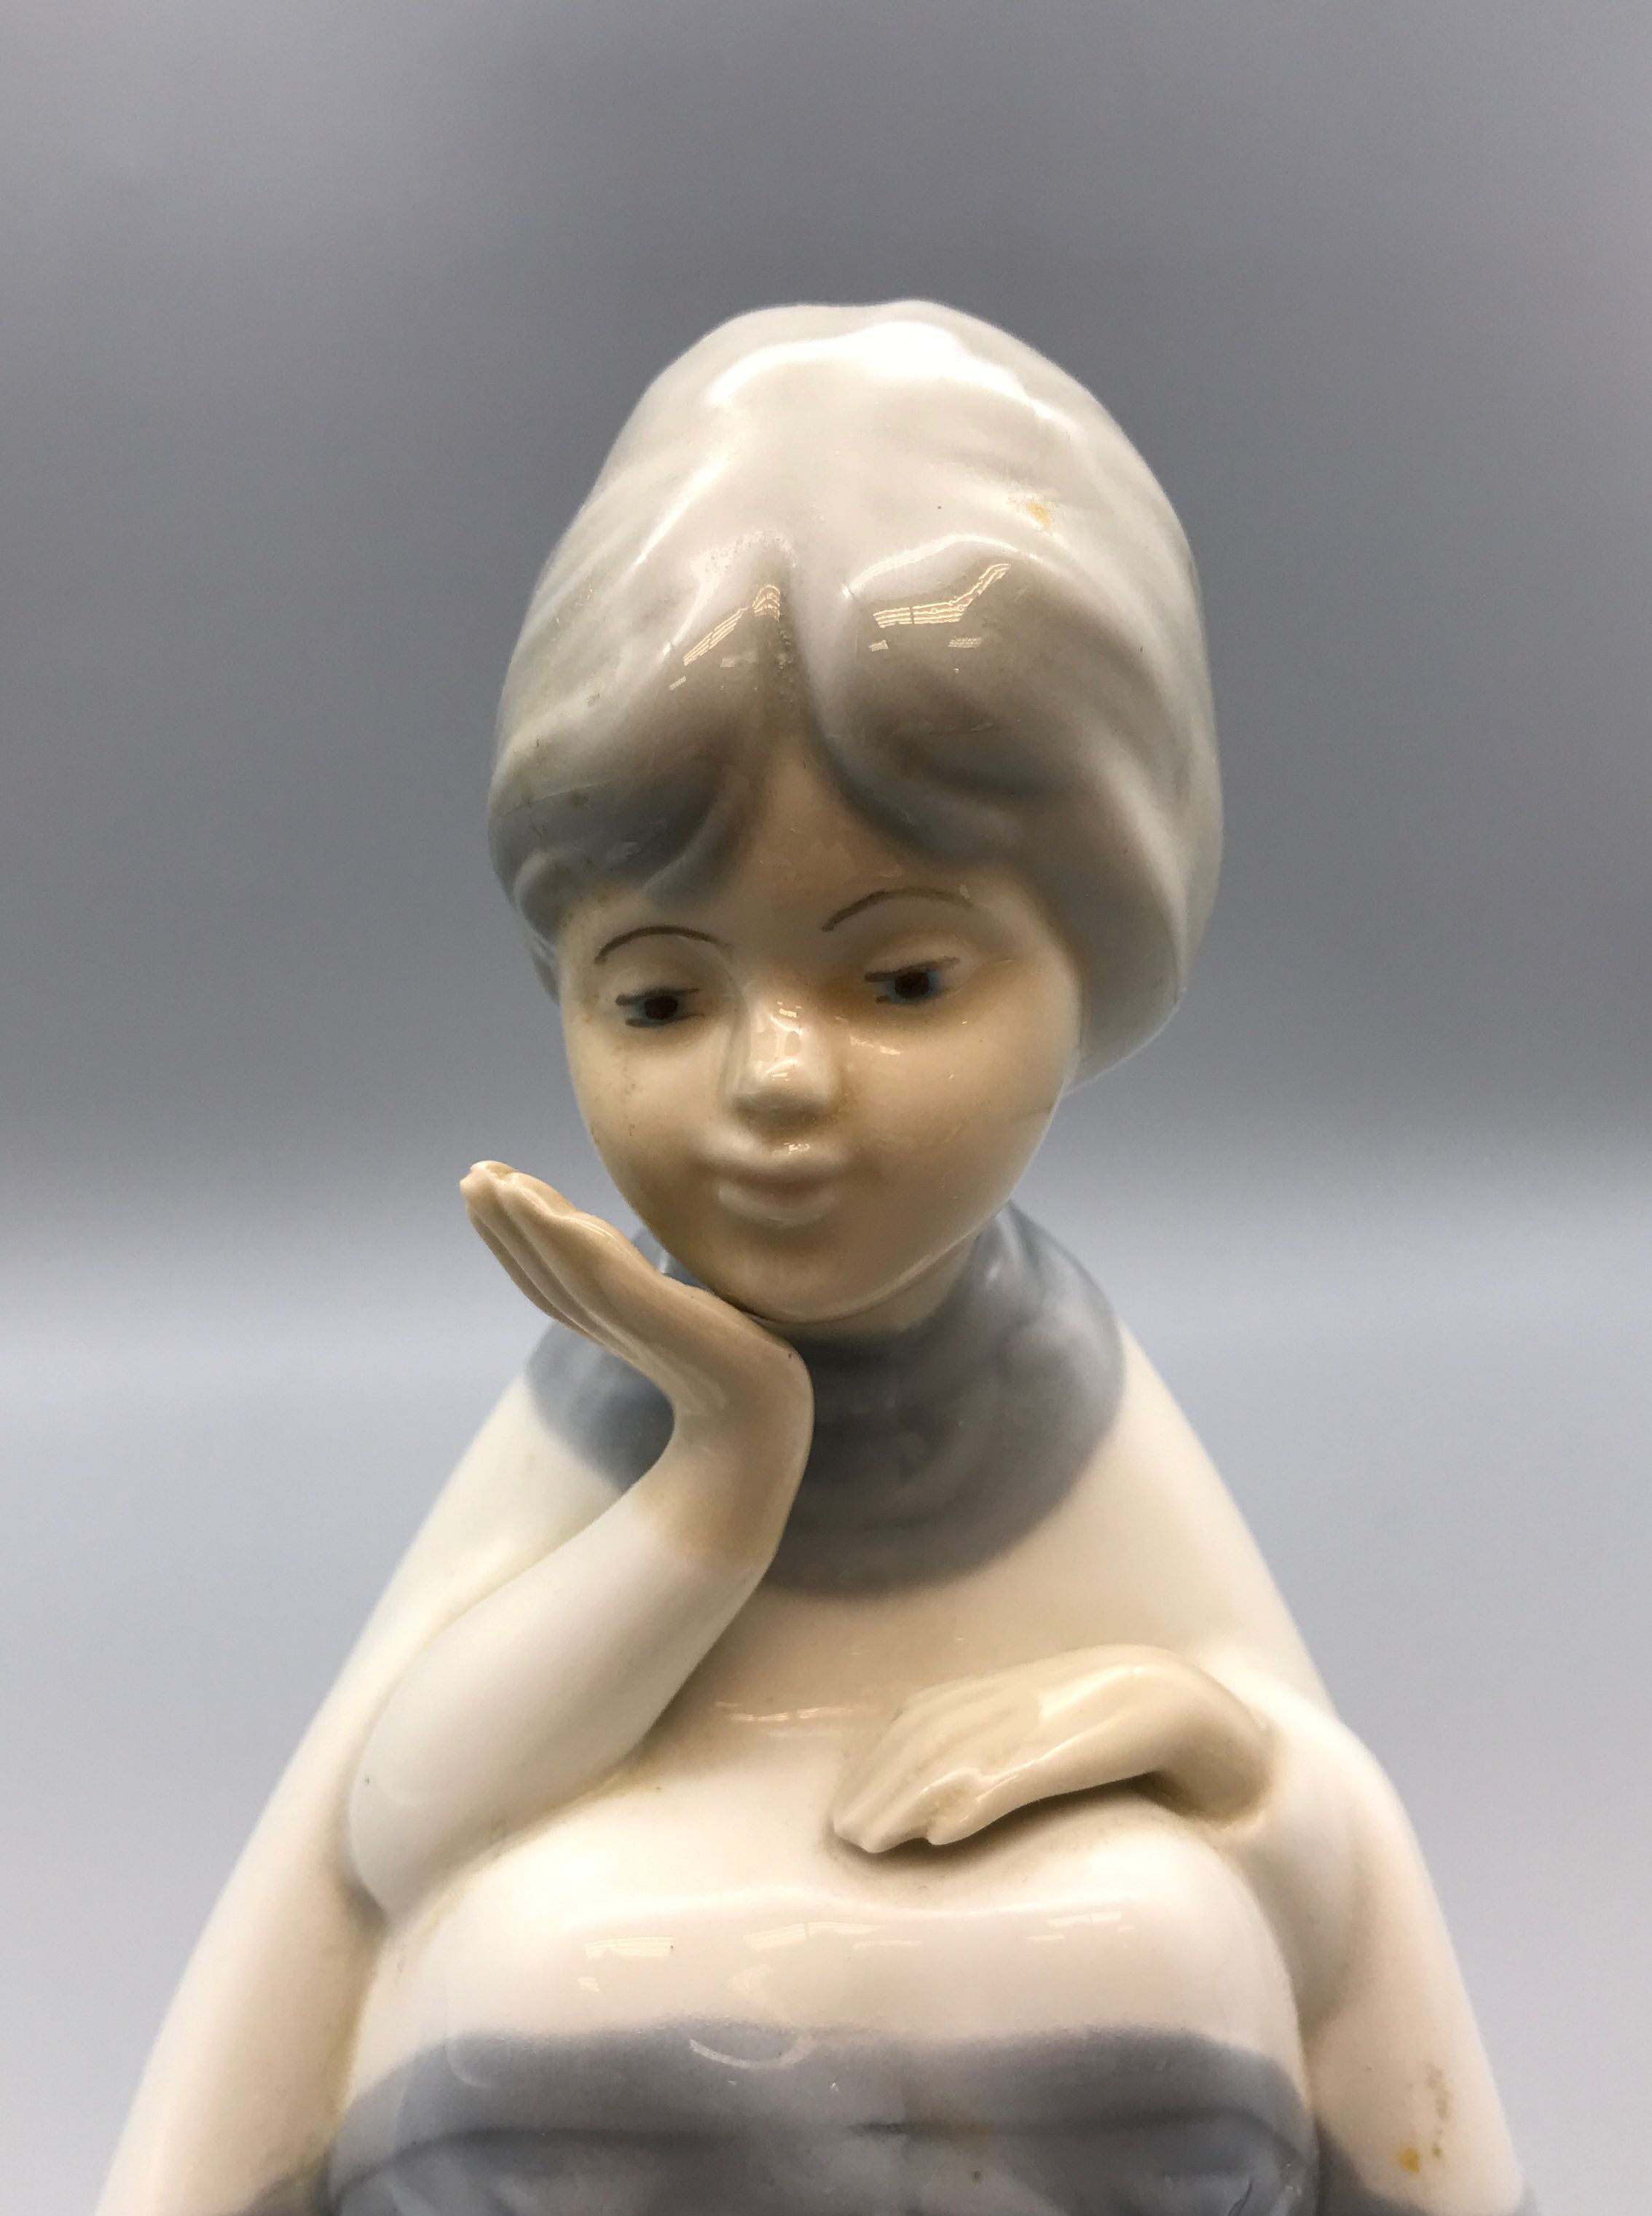 Porceval Villamarchante Porcelain Woman Sitting Figurine